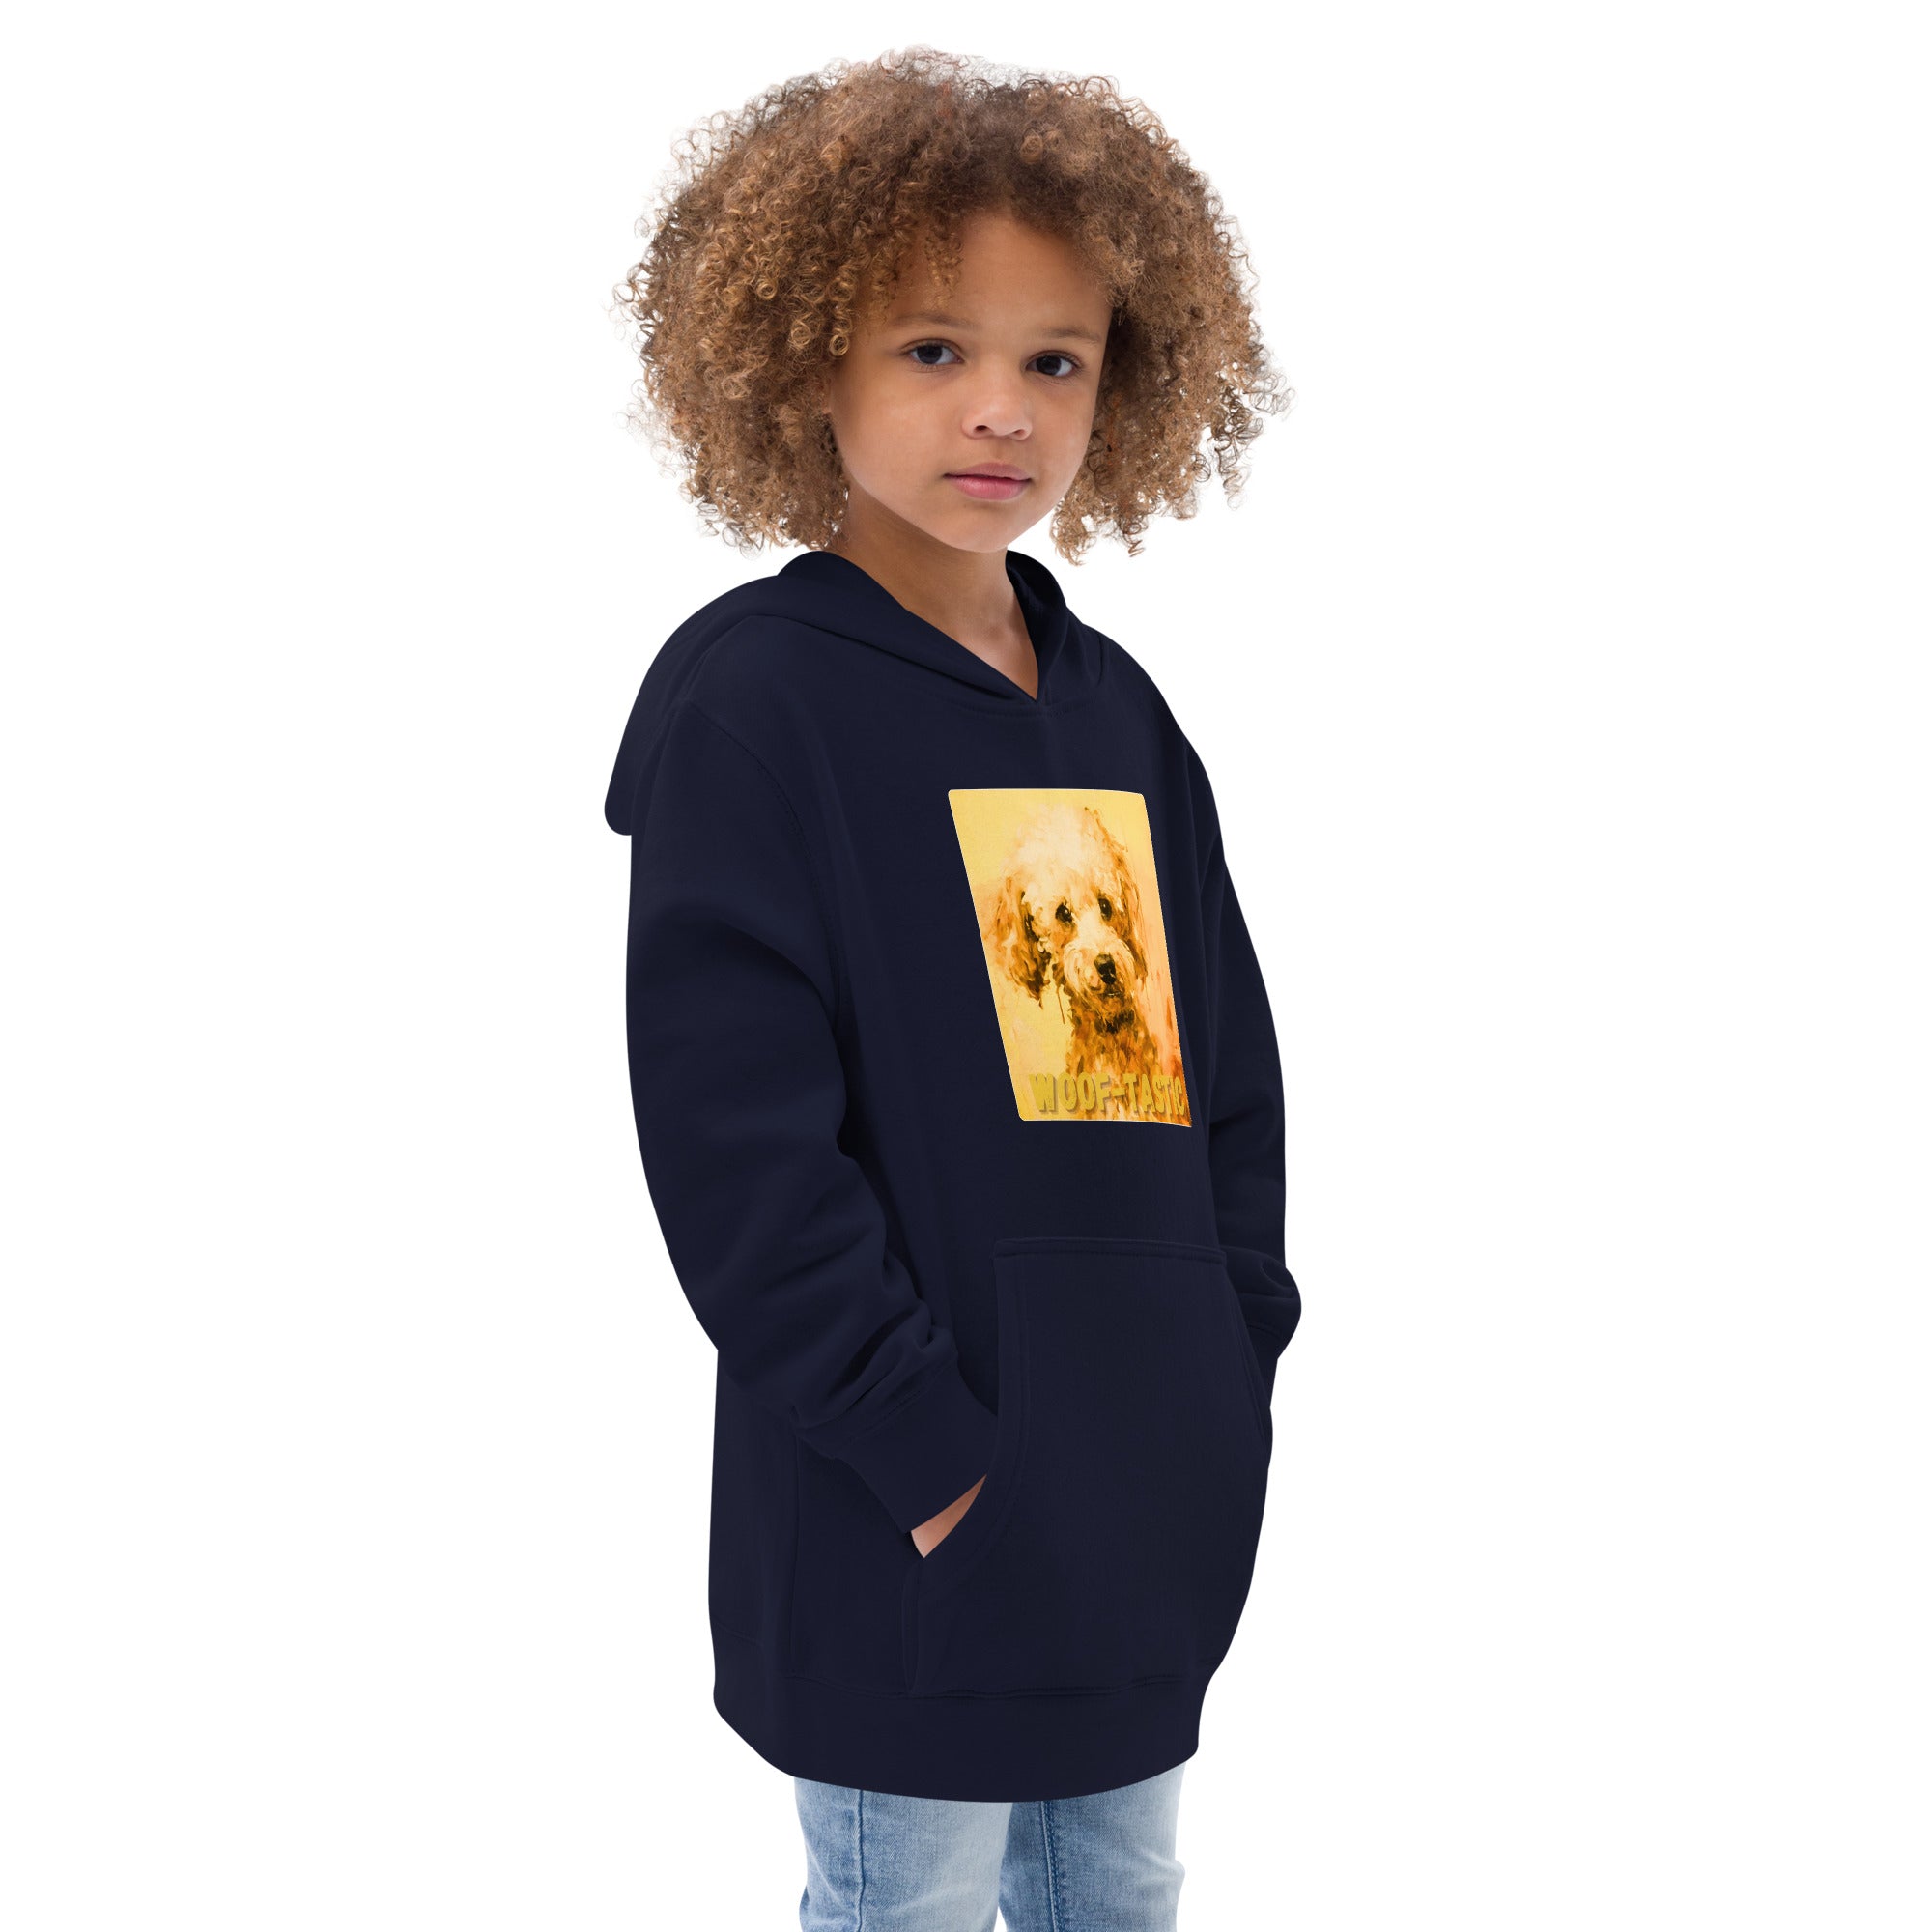 Kids fleece hoodie Woof-tastic Poodle